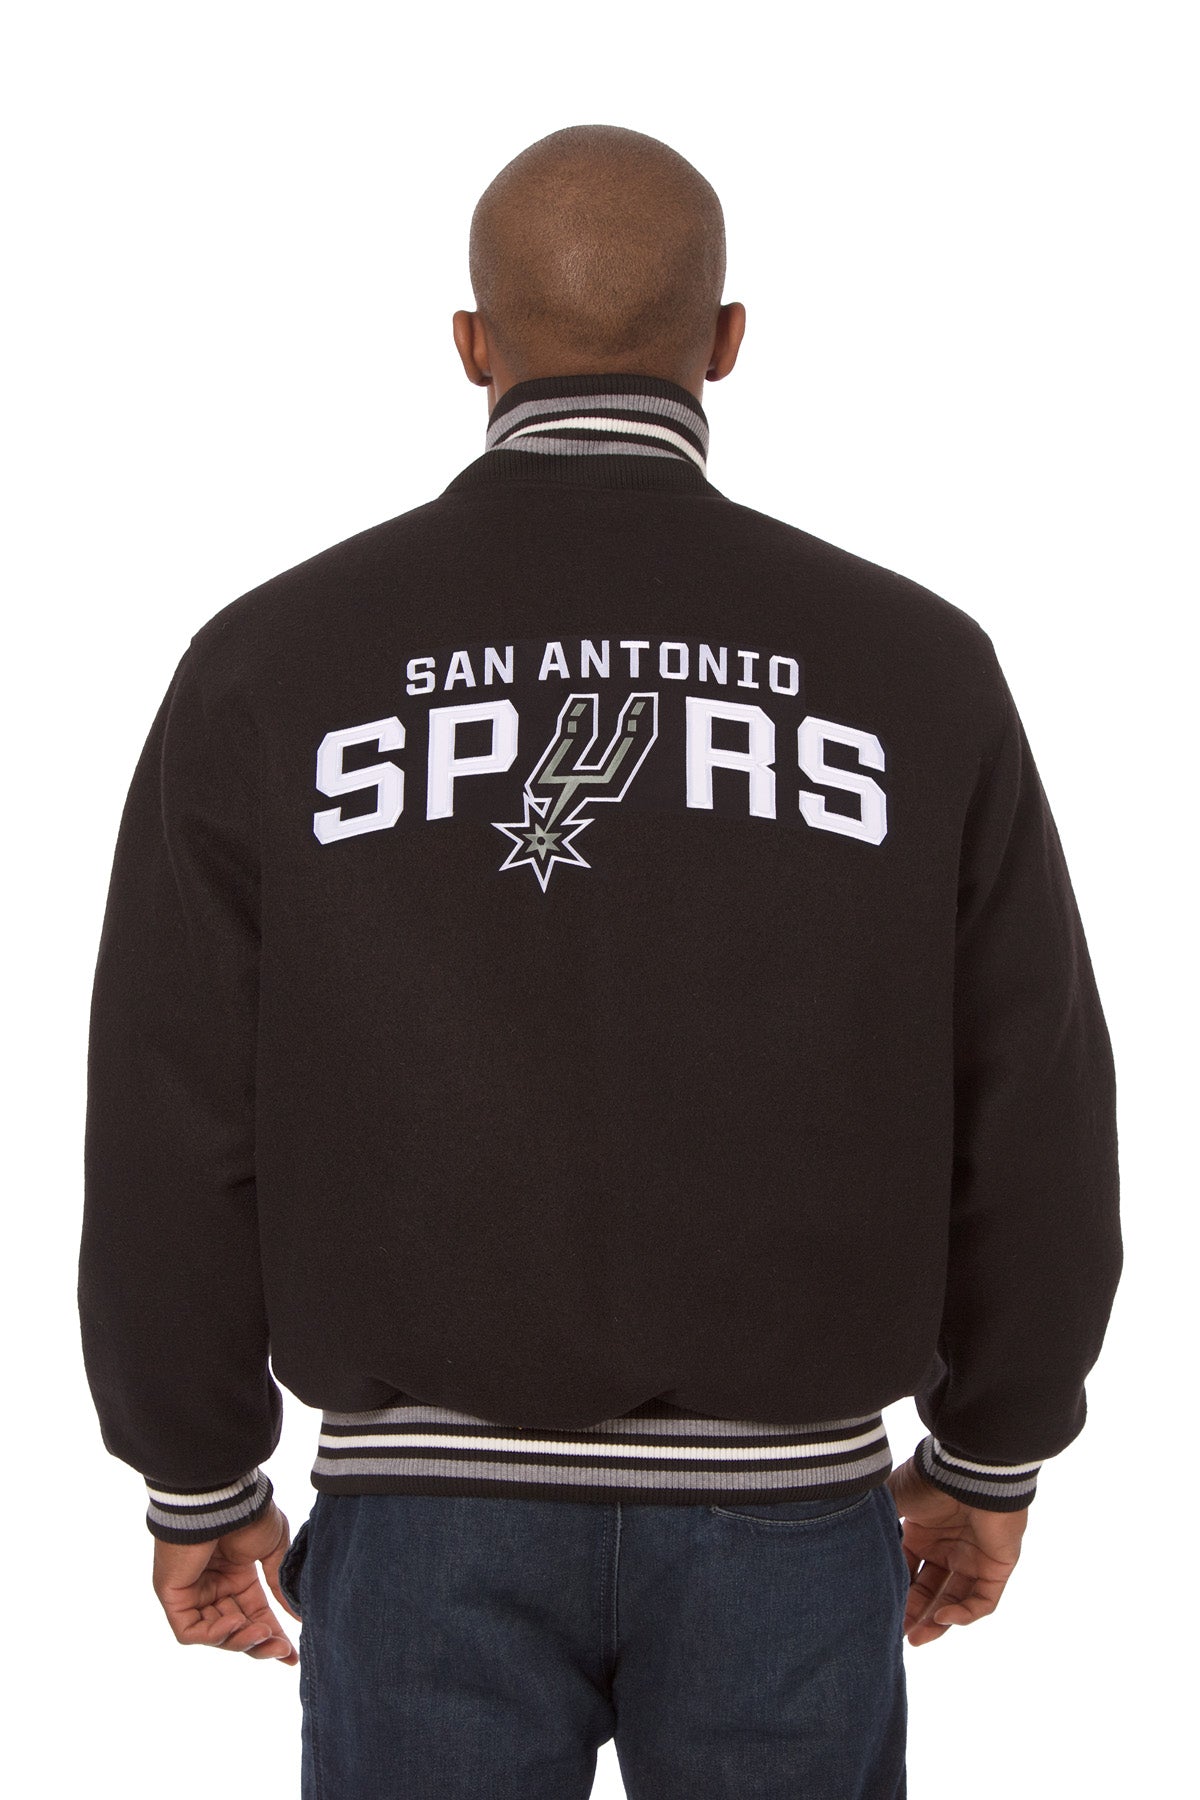 San Antonio Spurs Embroidered Wool Jacket